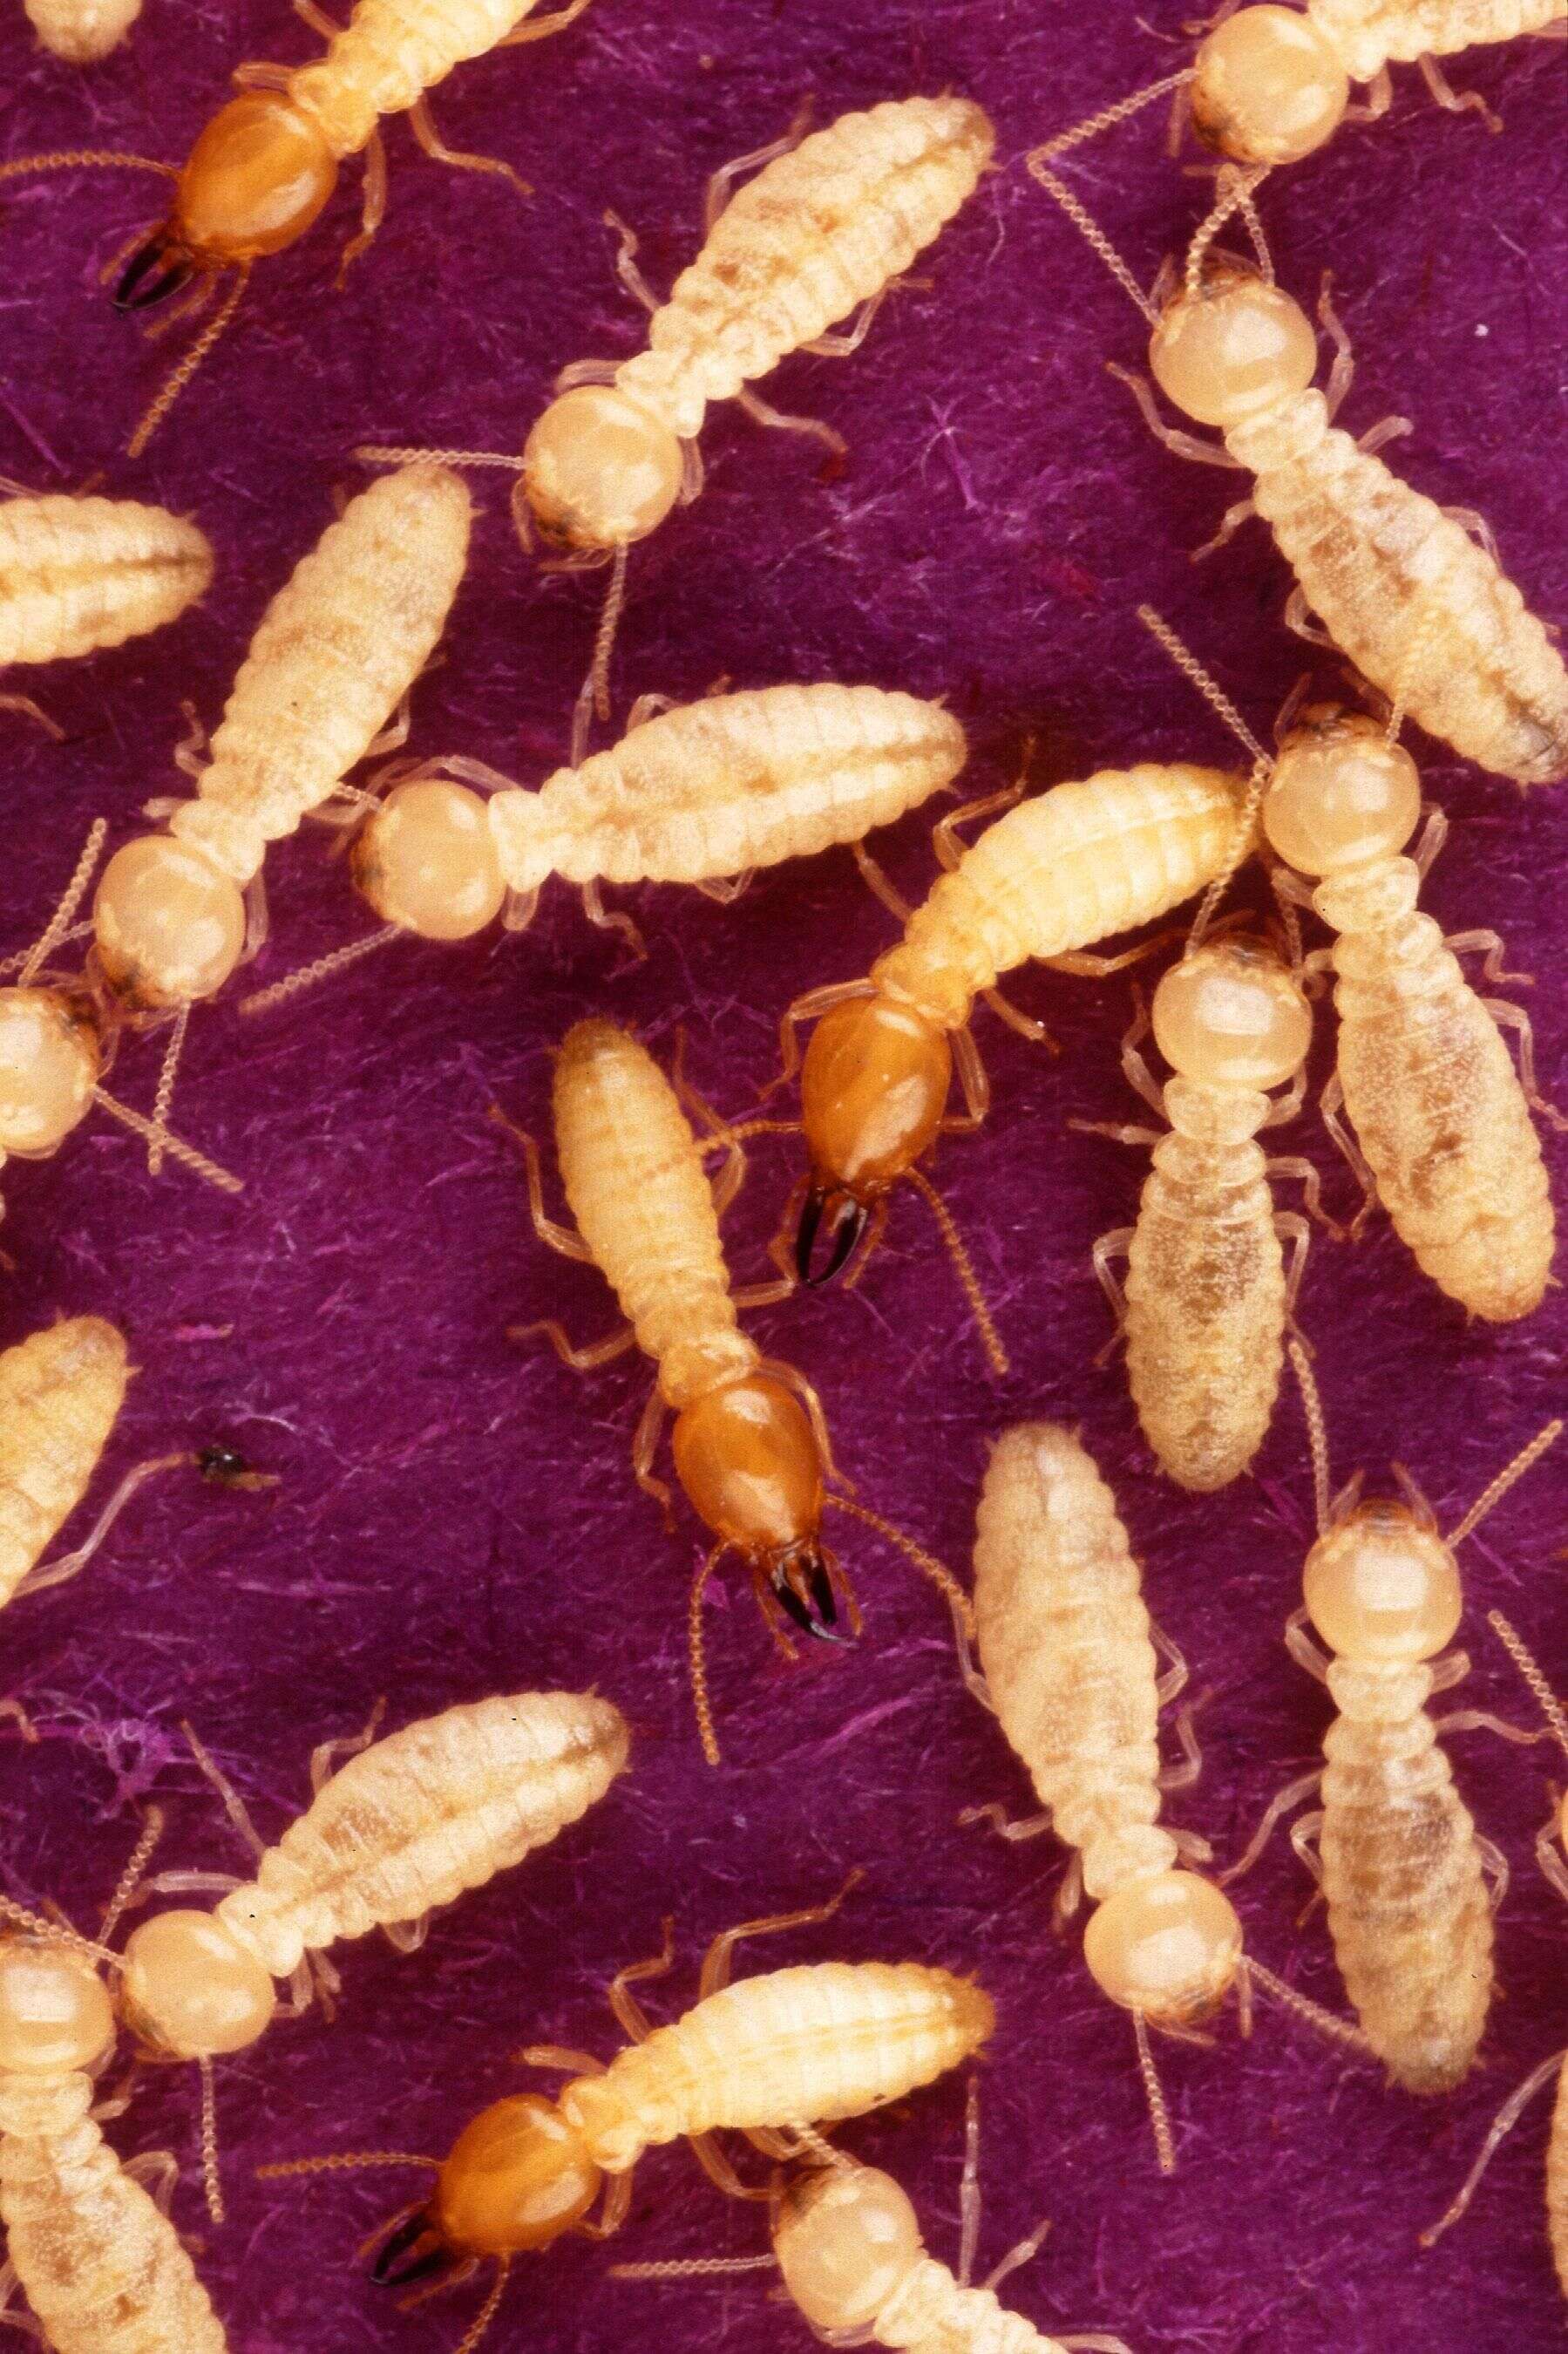 Image of Formosan subterranean termite